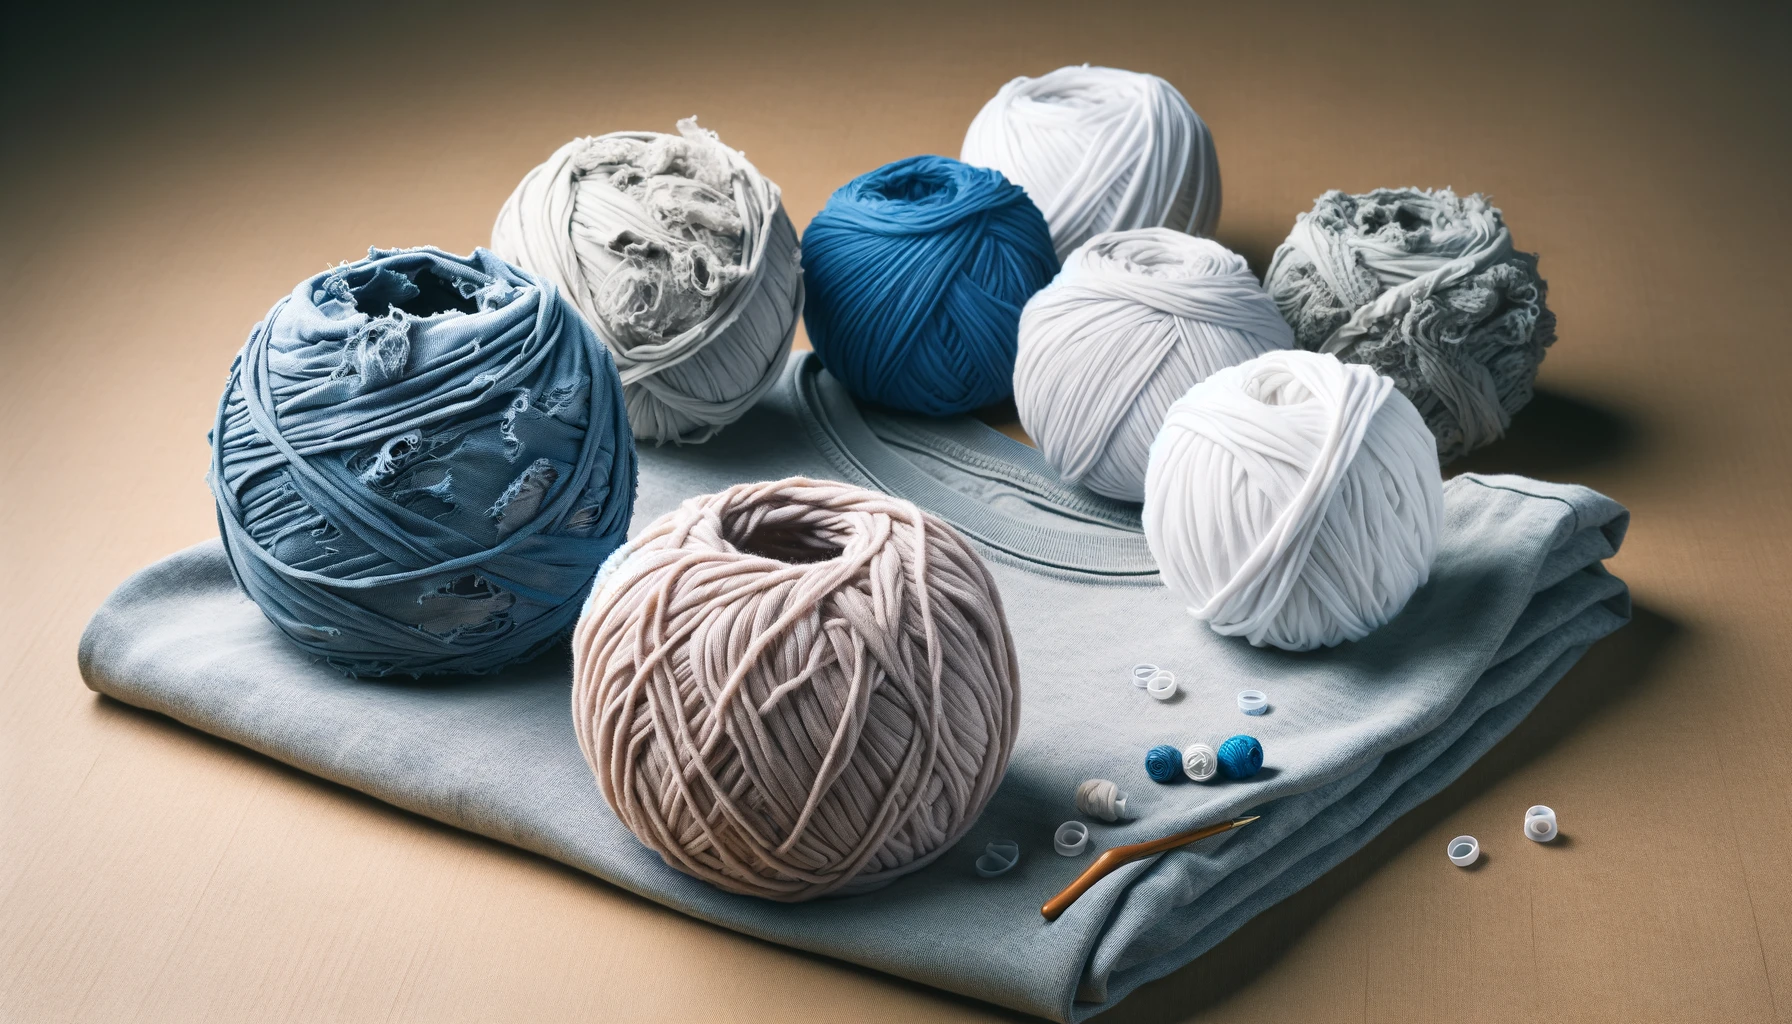 Royalty - Hand-dyed Yarn, Bulky Yarn, Chunky Yarn, Wool Yarn